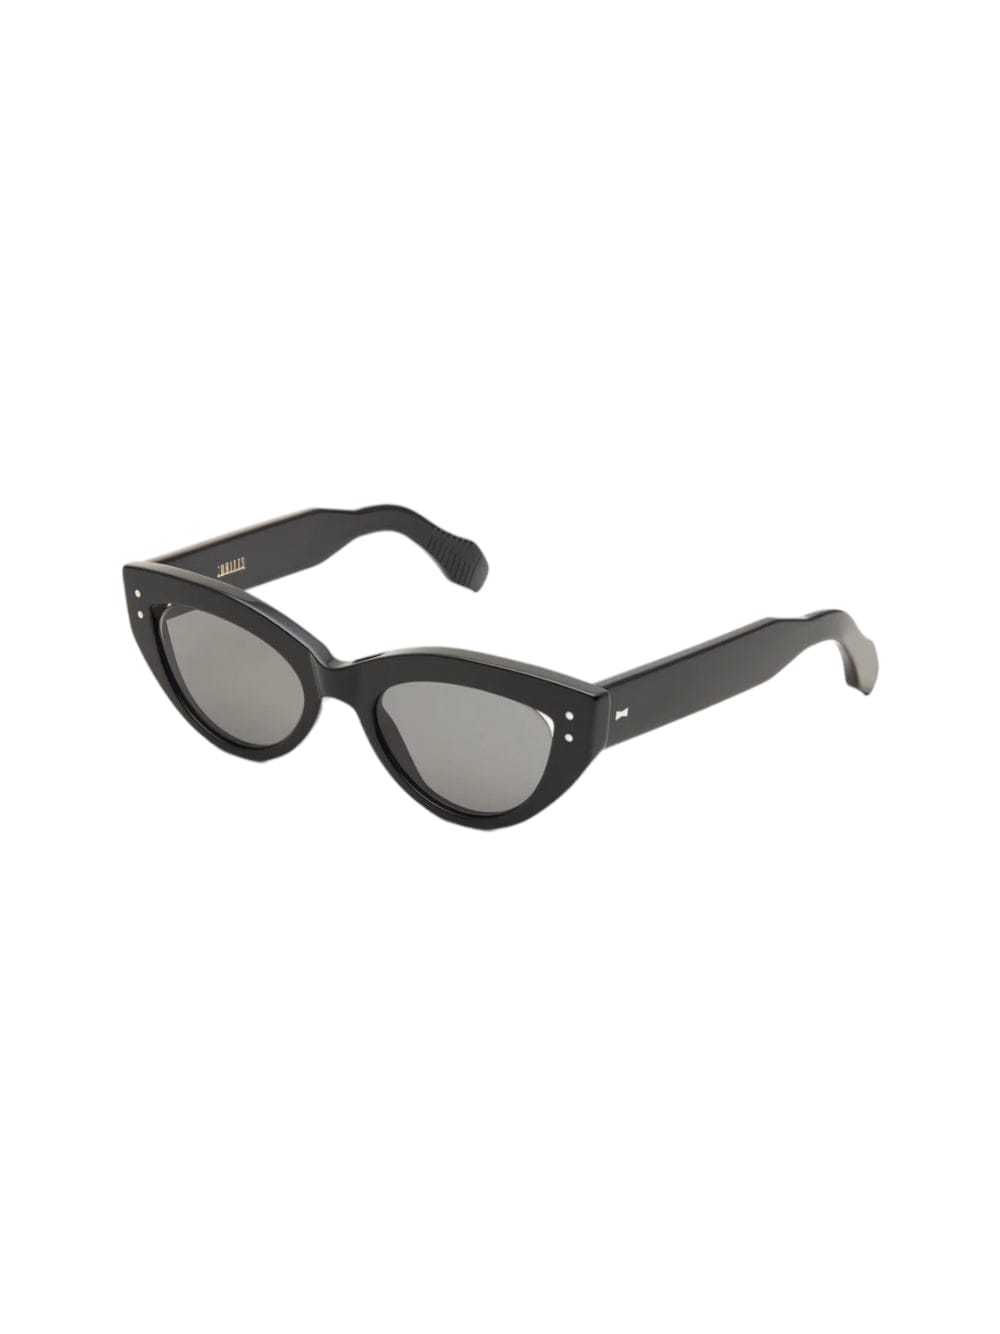 Cubitts Caledonia Sunglasses In Black